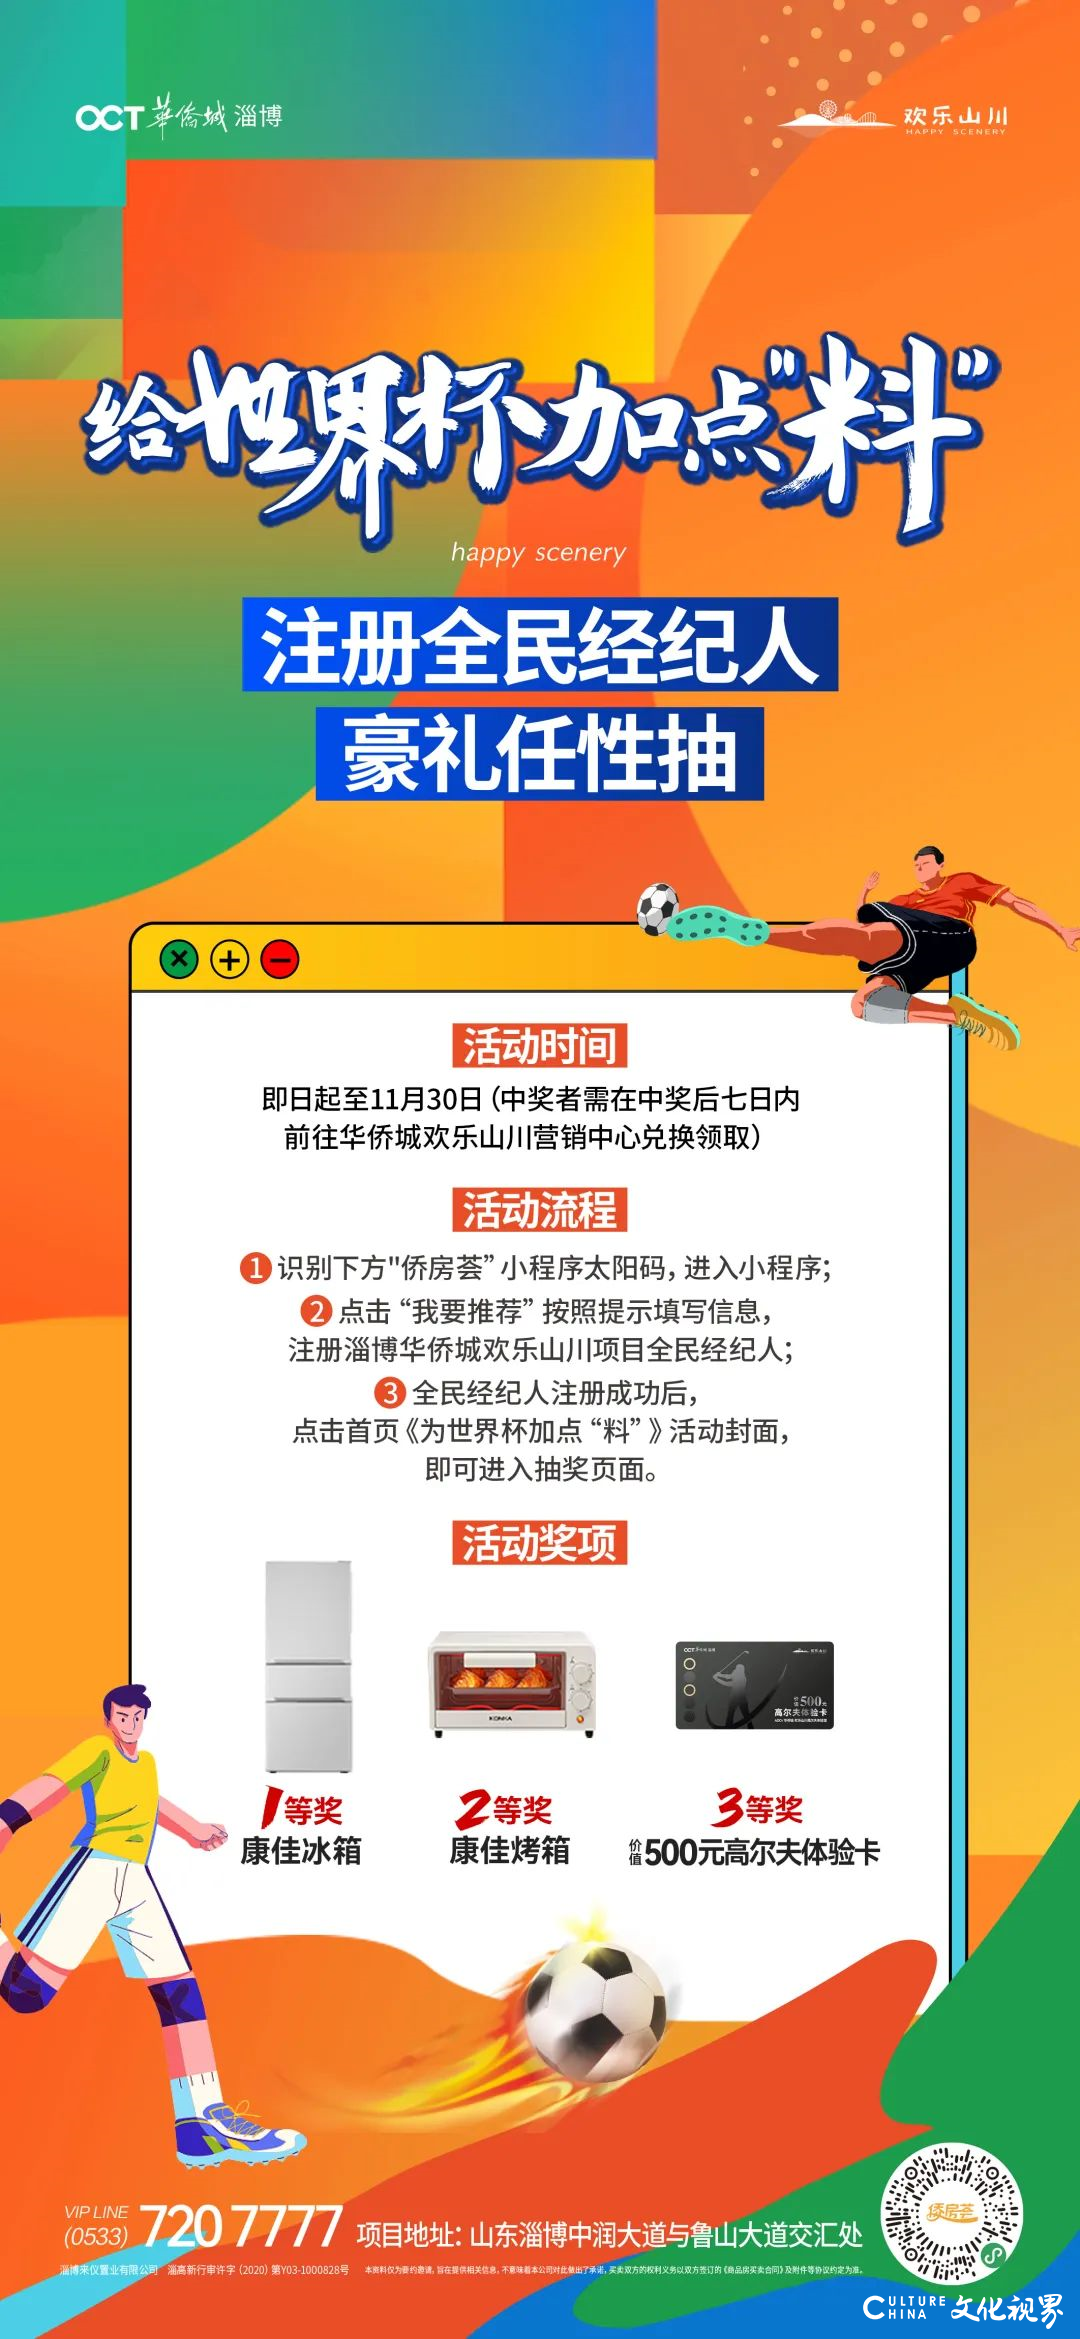 华侨城山东区域公司：多维度营销促去化 引爆岁末抢收战